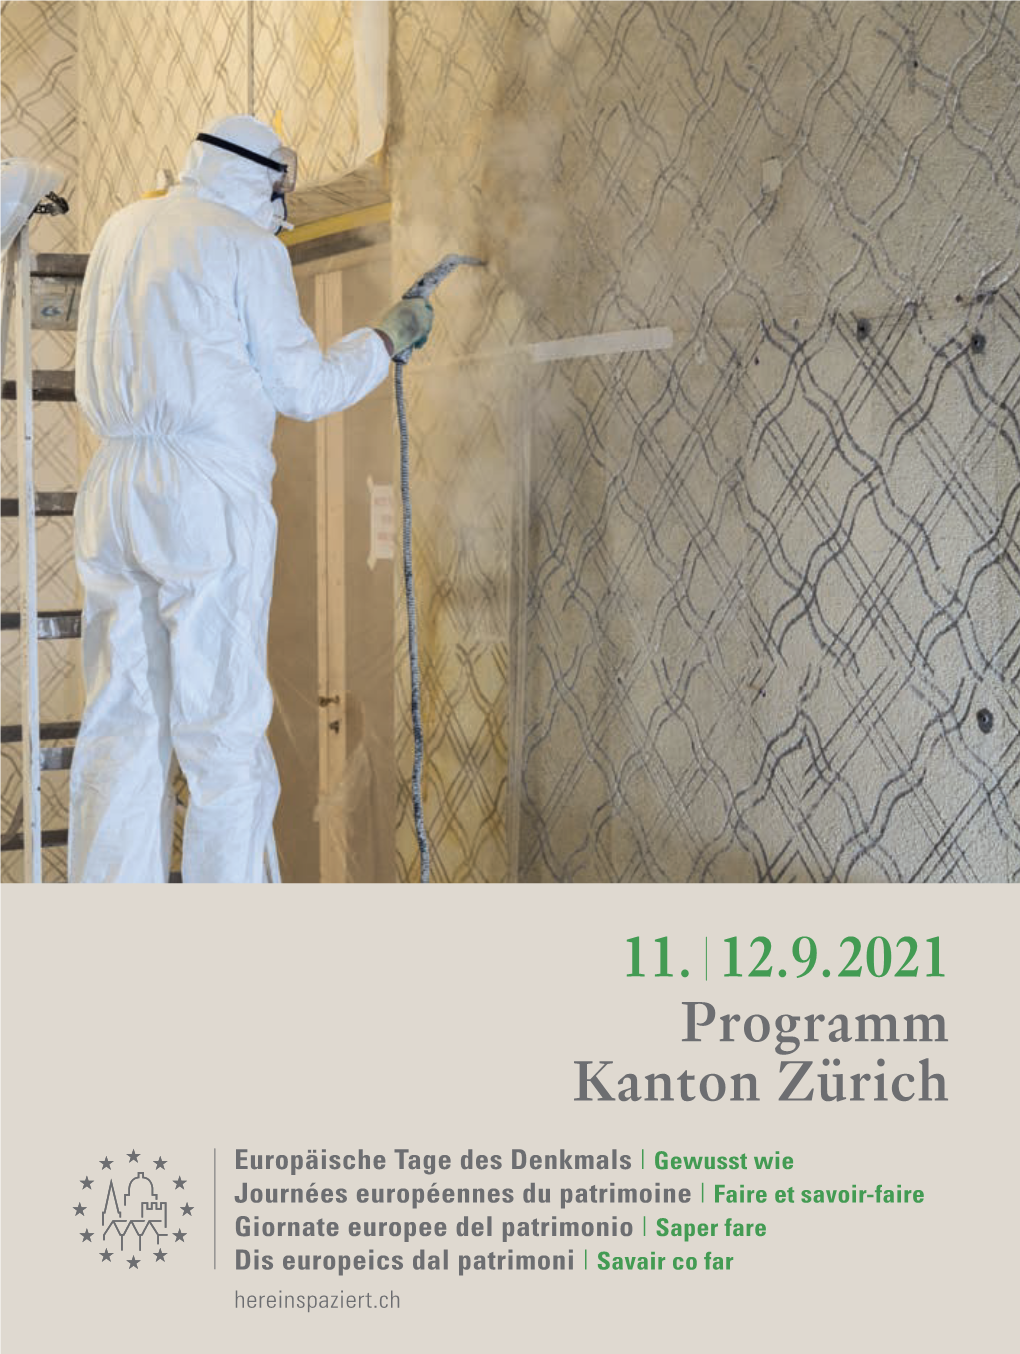 Denkmaltage 2021, Programm Kanton Zürich